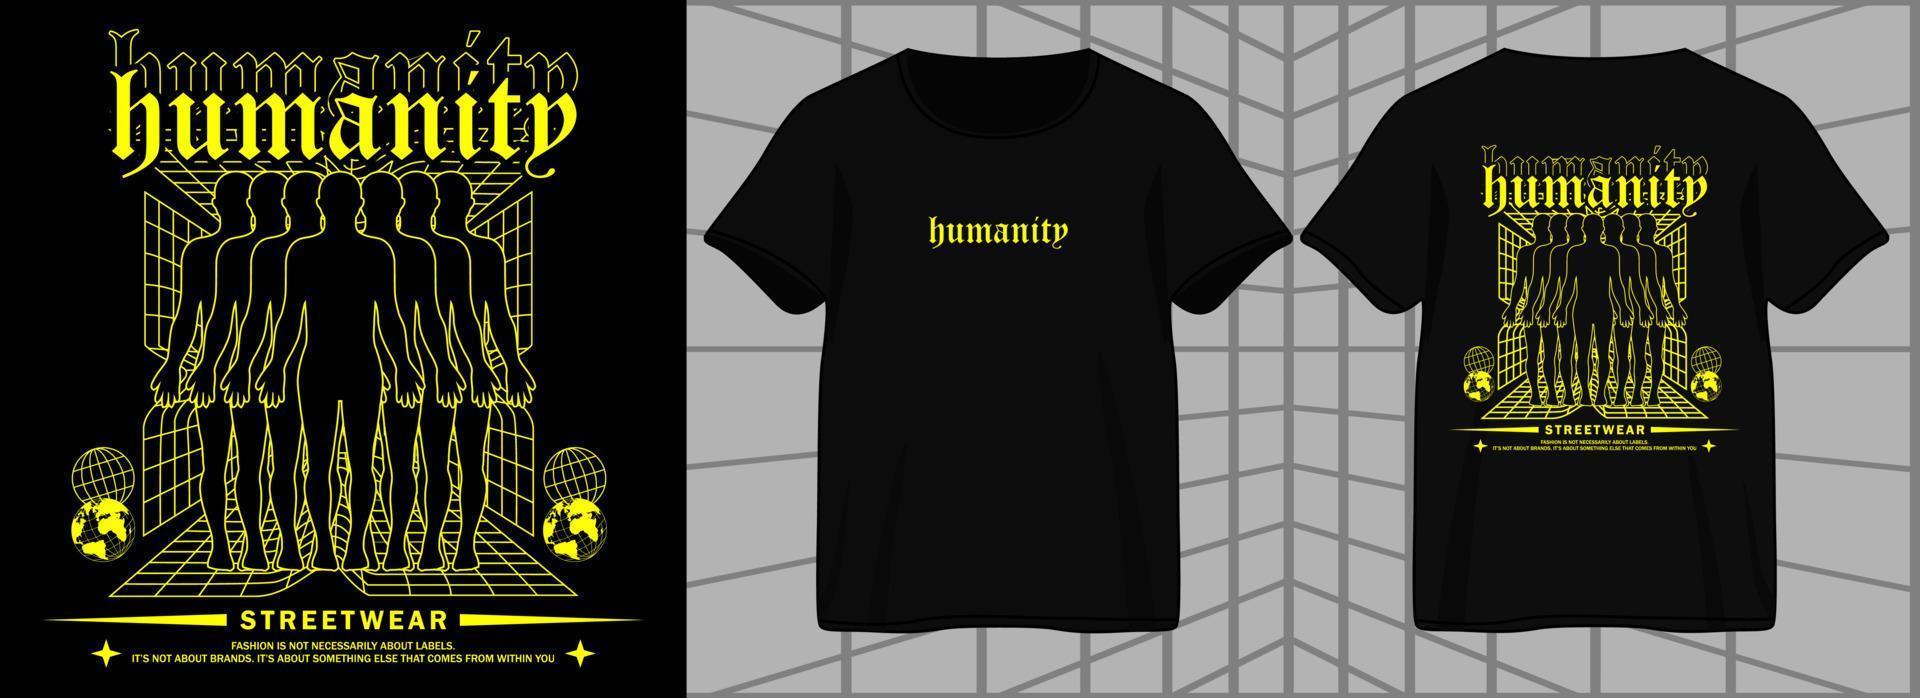 conception graphique esthétique de l'humanité pour t-shirt streetwear et style urbain vecteur